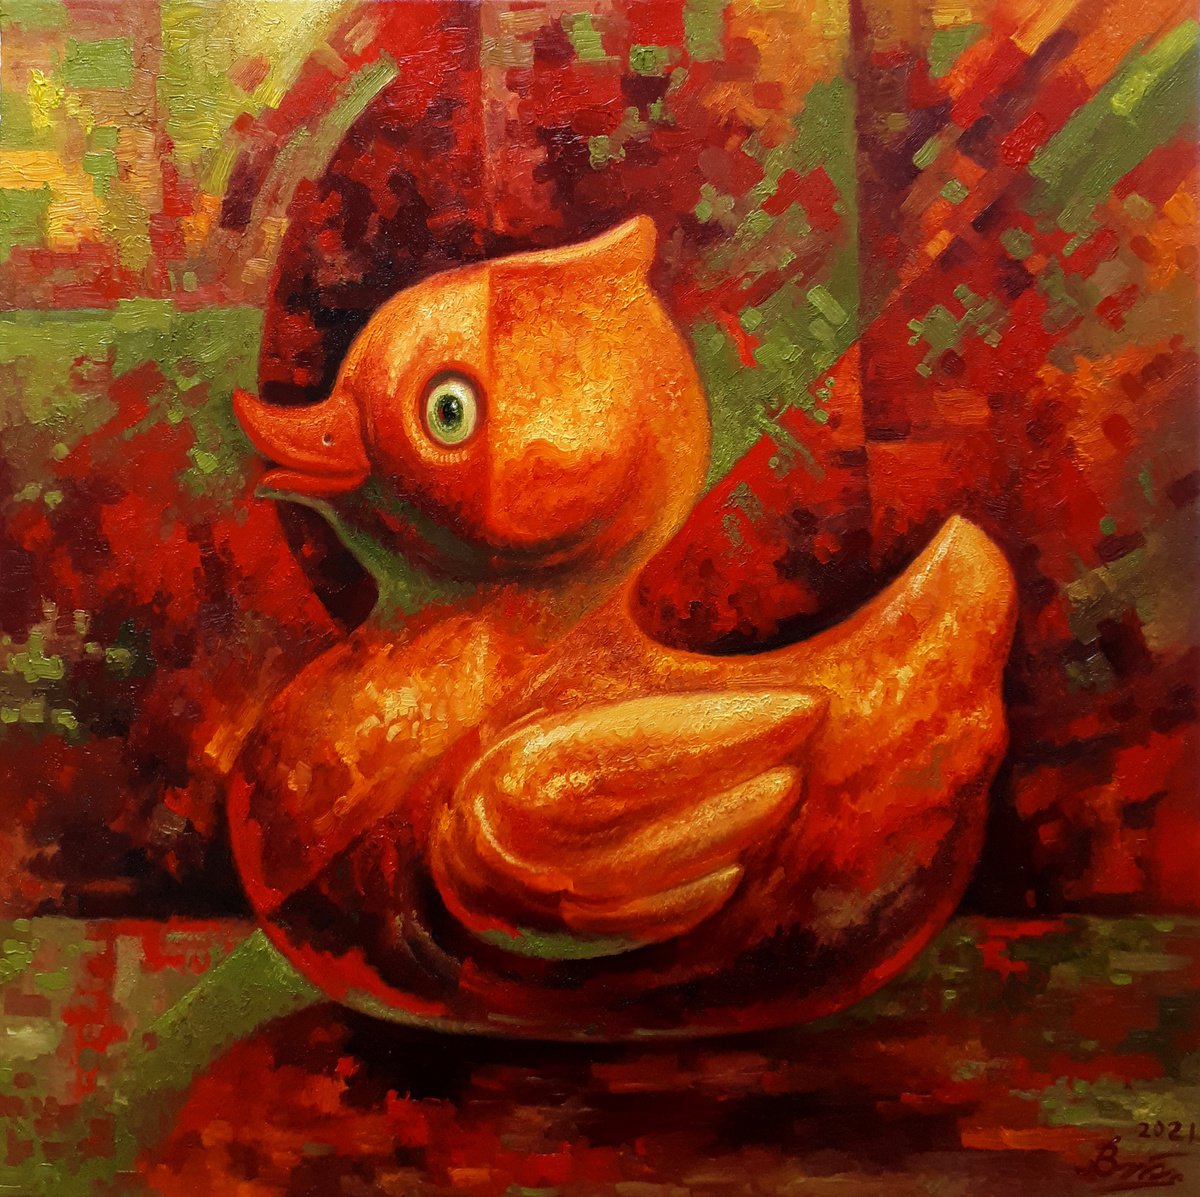 Duckling by Serhii Voichenko